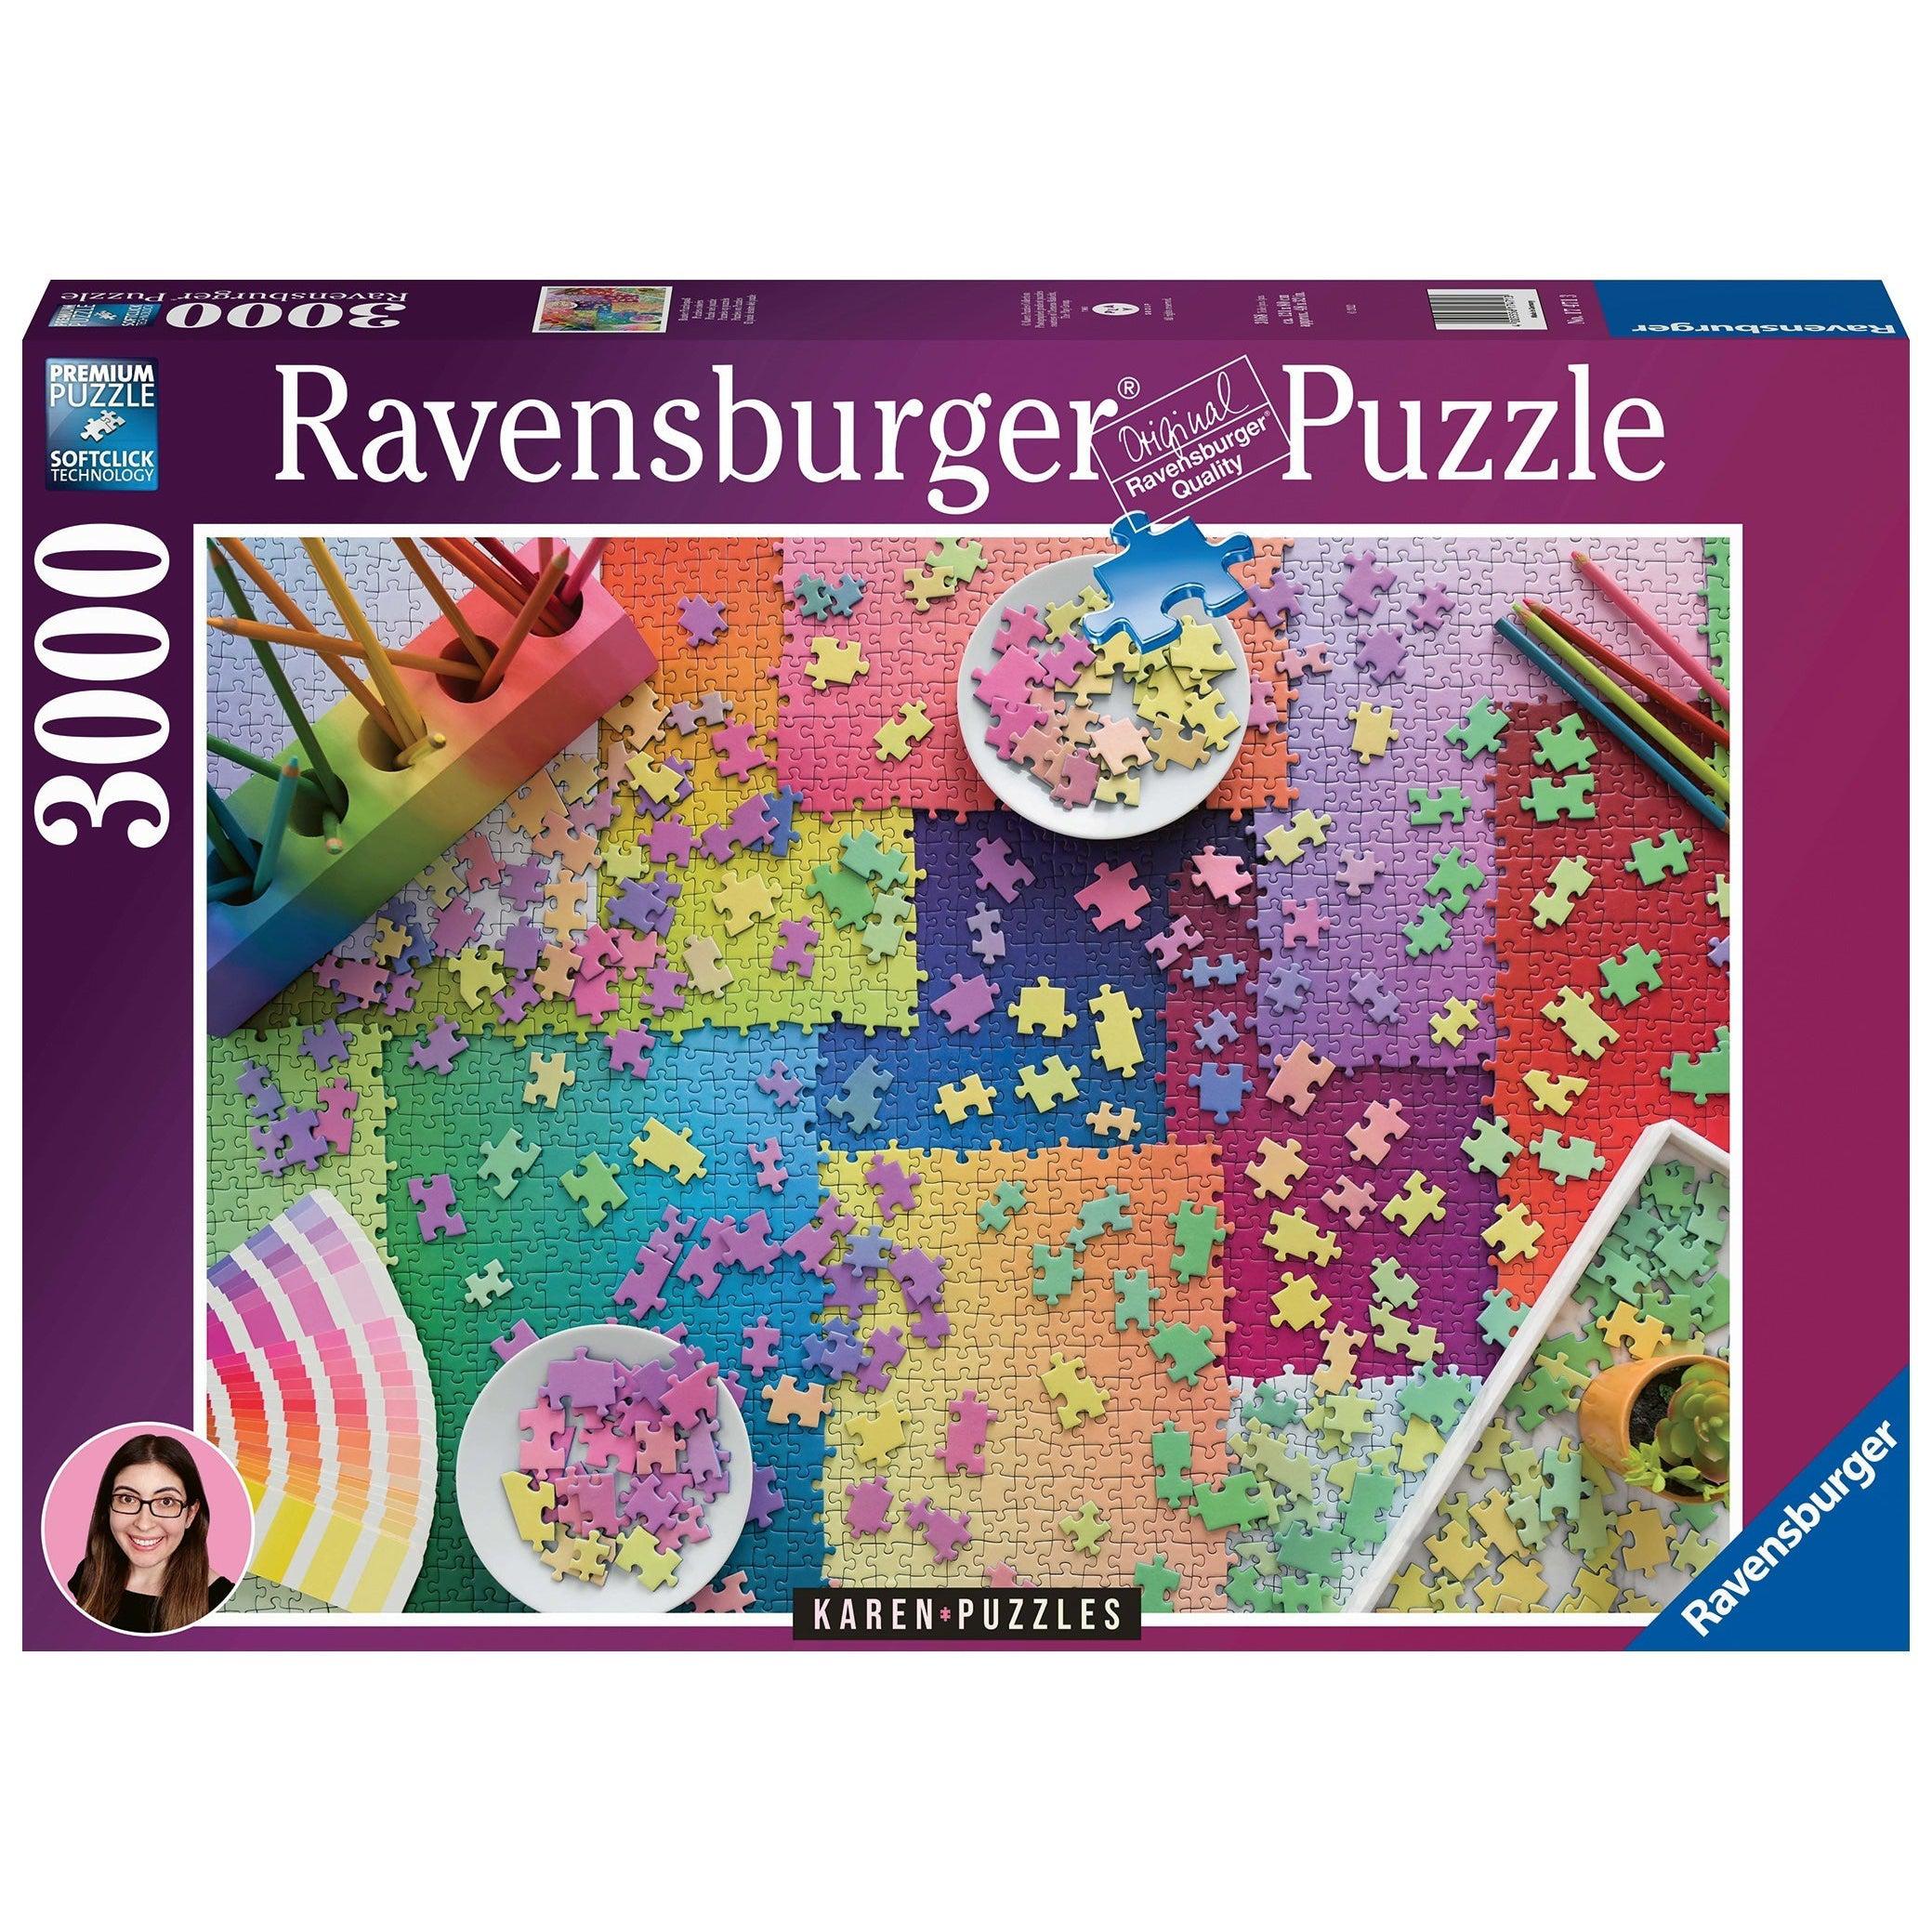 Ravensburger-Karen Puzzles on Puzzles 3000 Piece Puzzle-17471-Legacy Toys